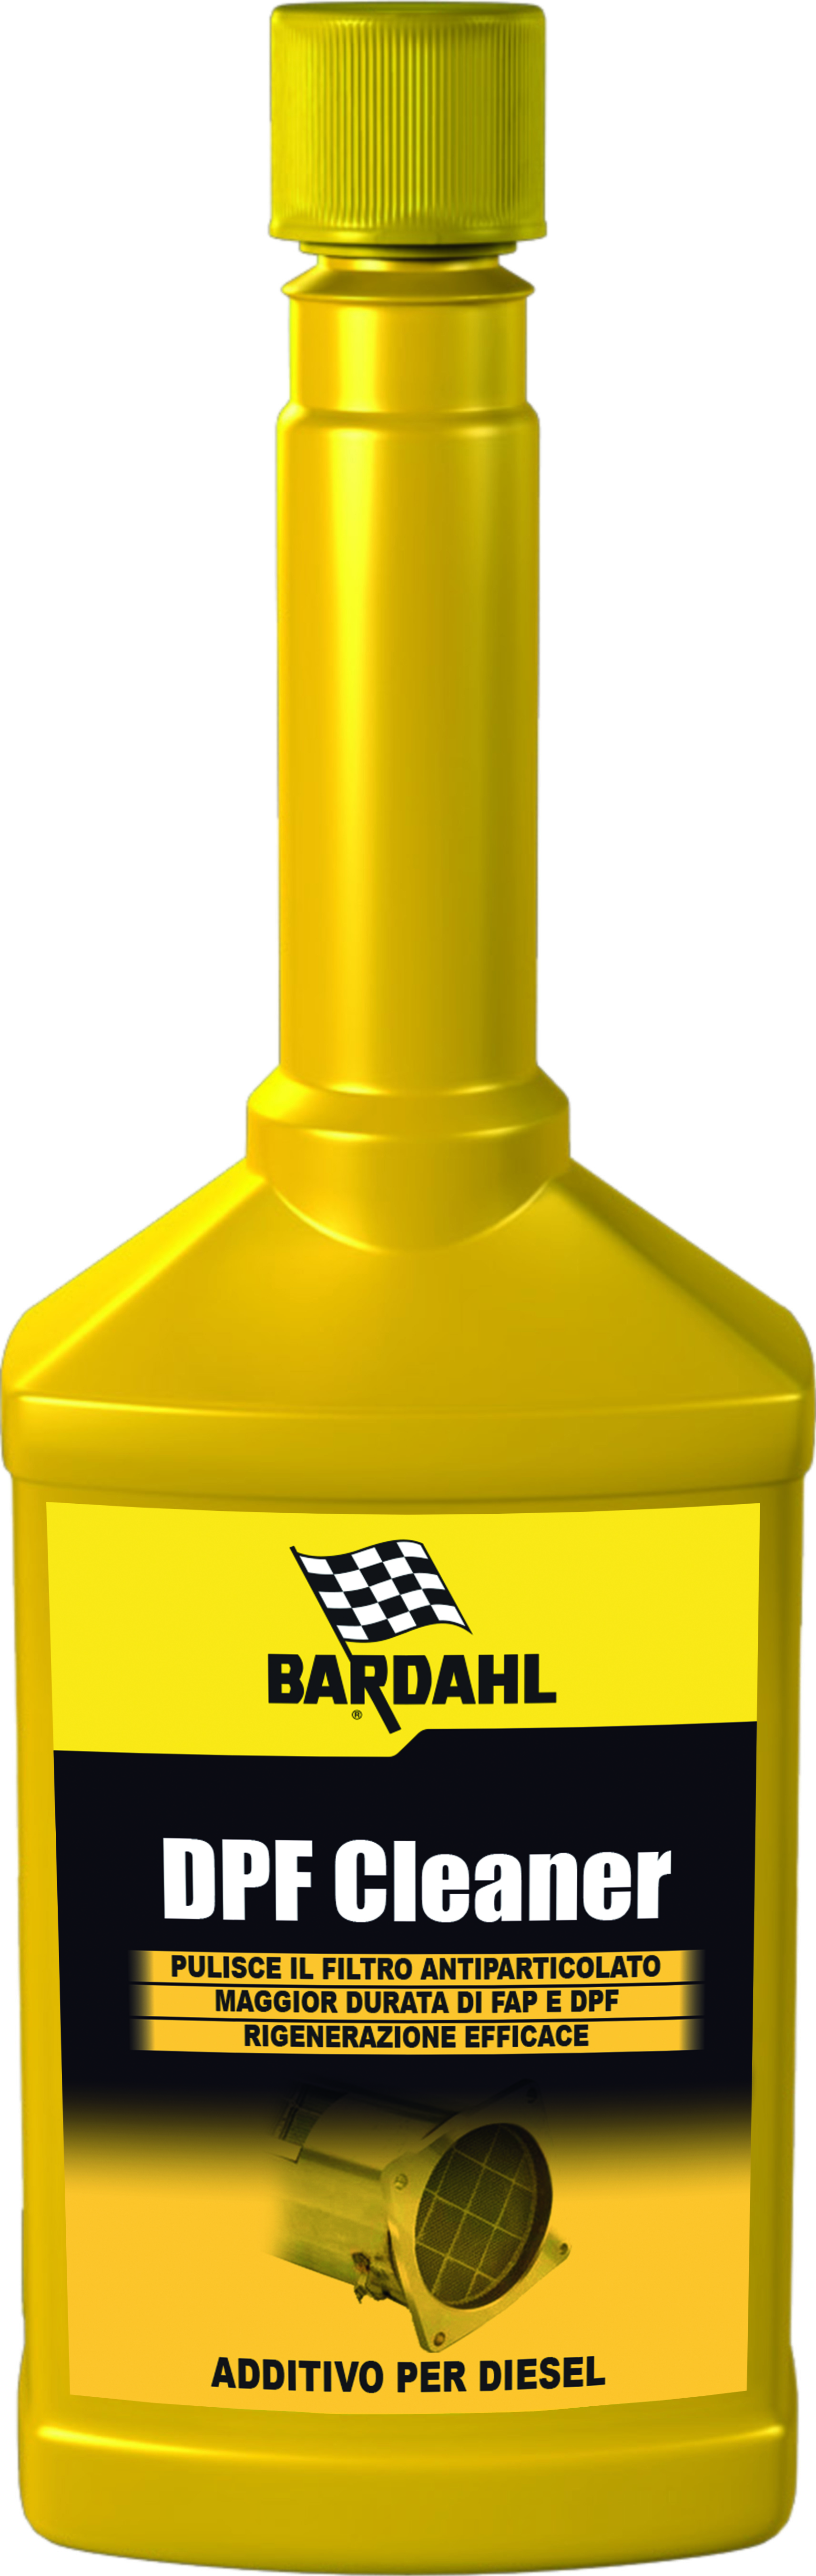 Bardhal: nuovo additivo DPF Cleaner - Notiziario Motoristico